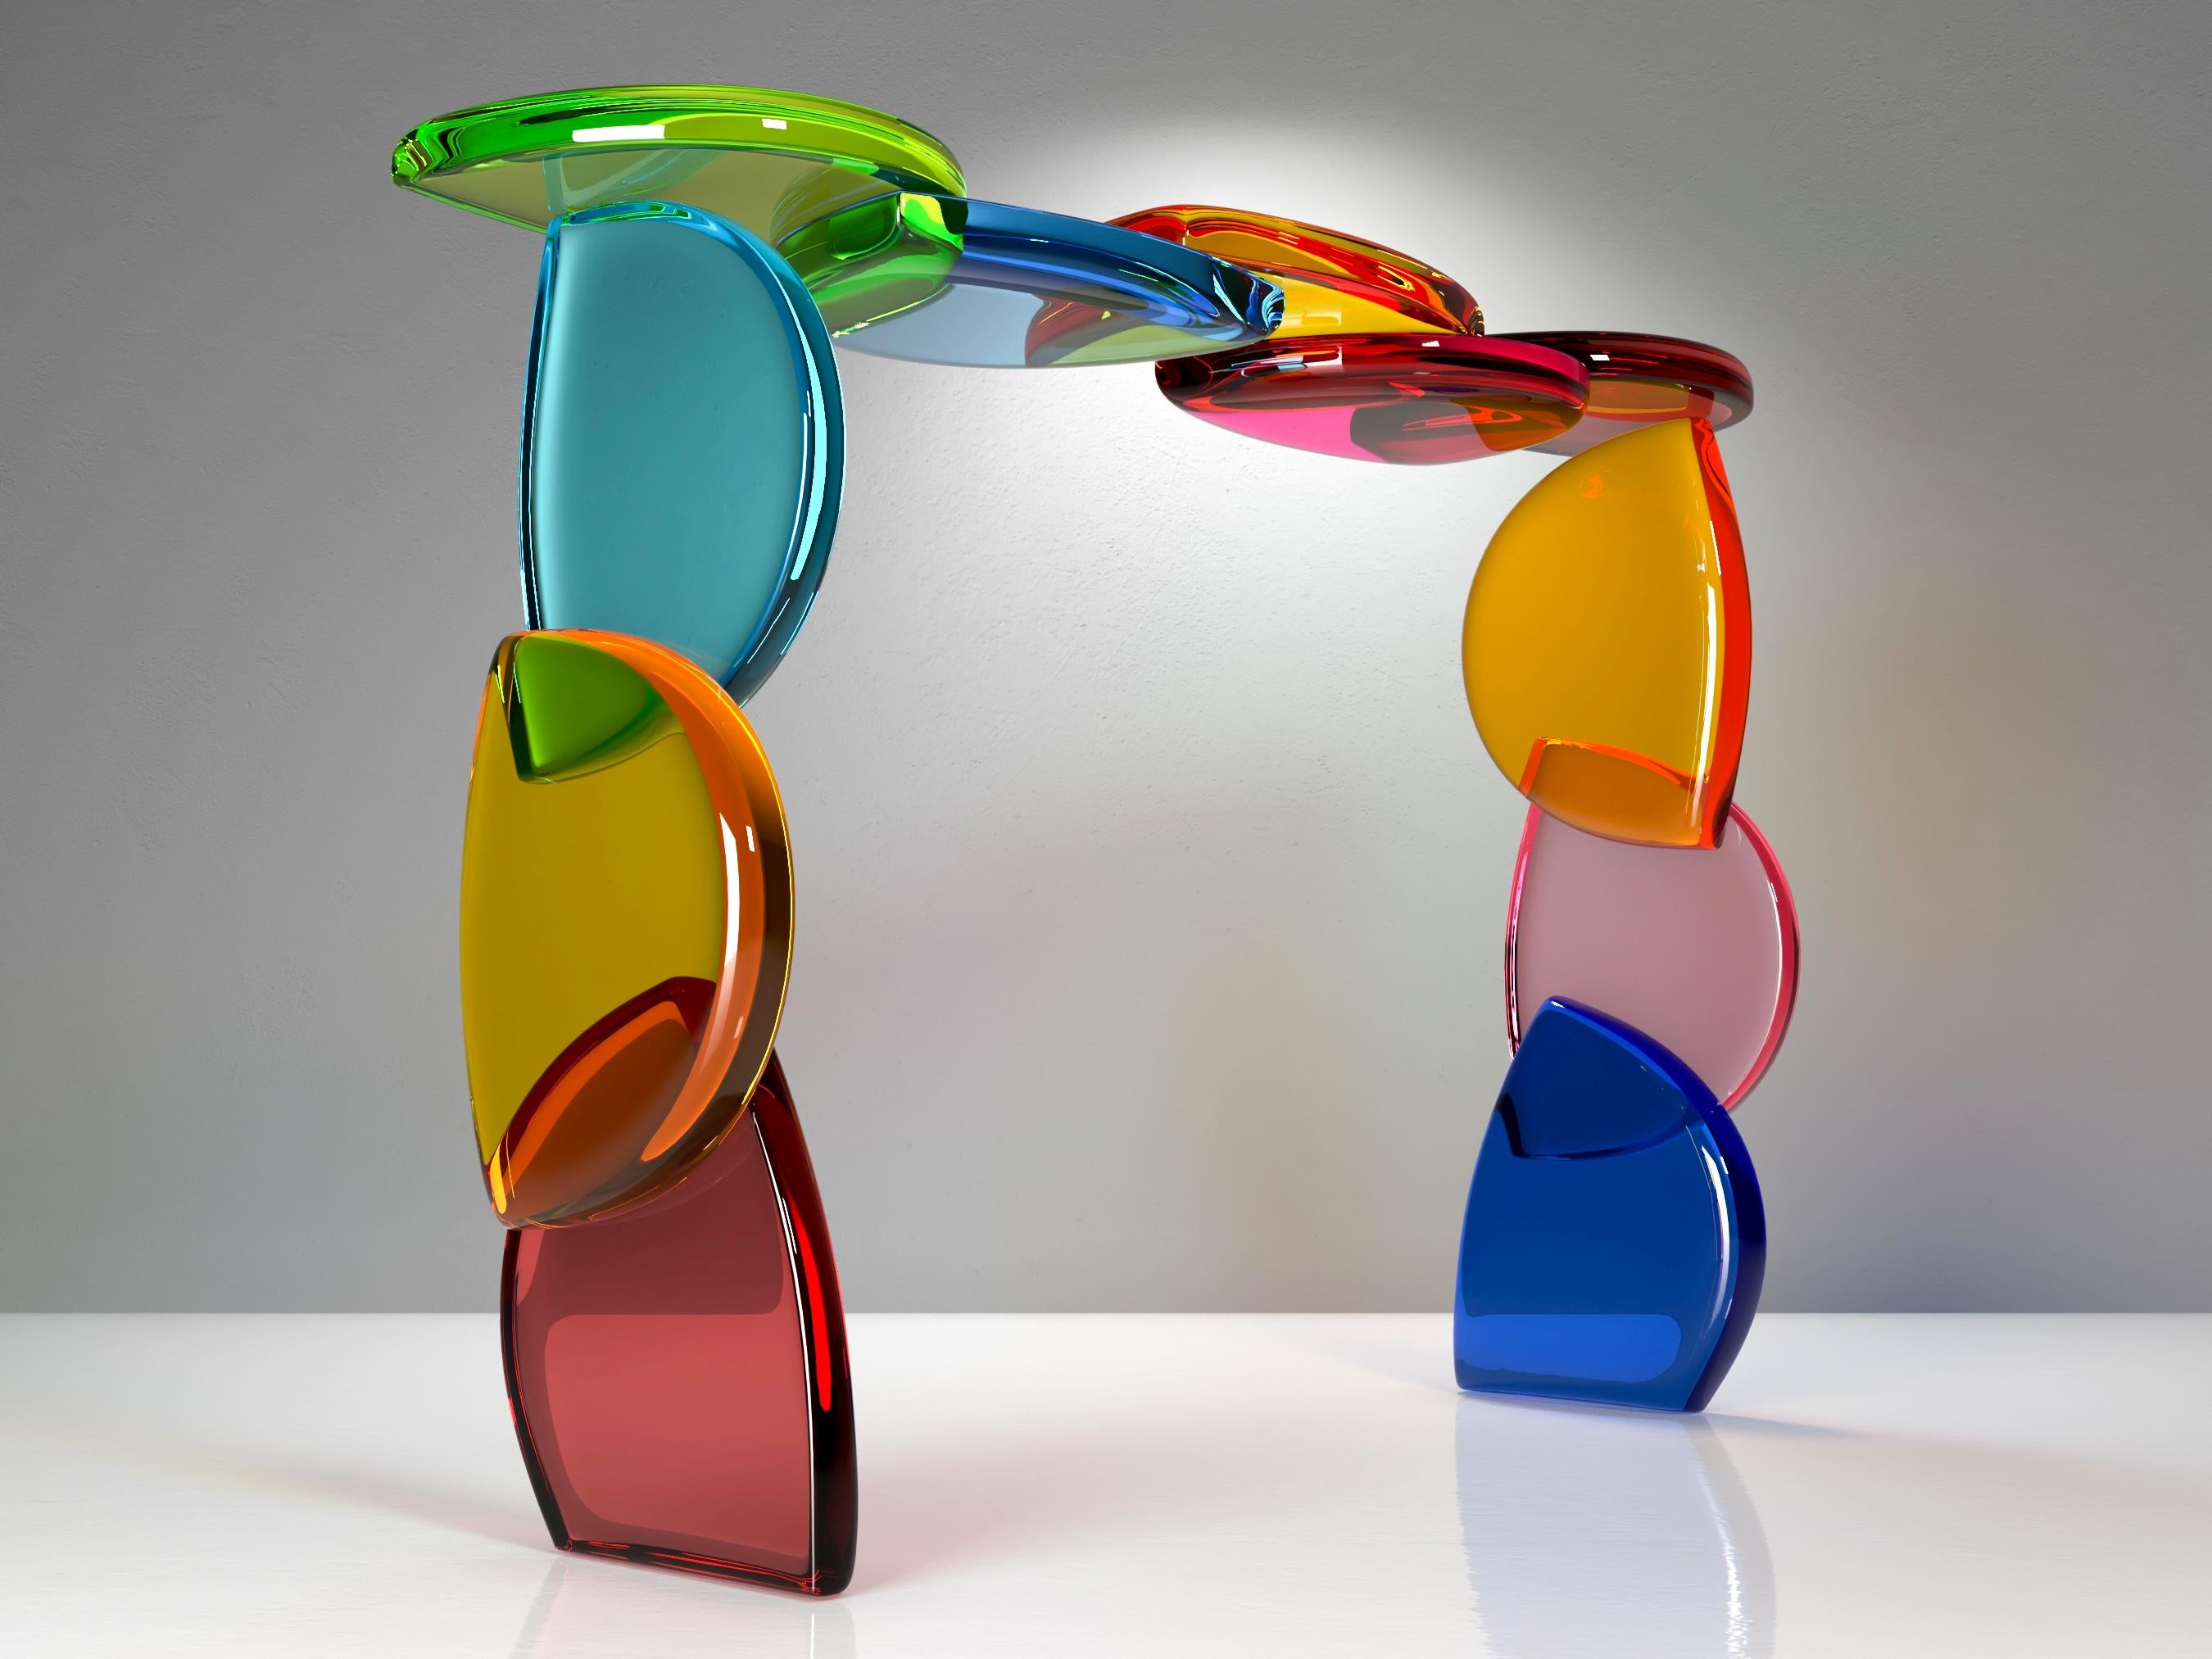 Bon Bon Konsole mit einer Struktur aus farbigen Sequenzen von Plexiglasmodulen, die durch den Aufbau der Form wiederholt werden.
Eine Serie von Einzelstücken, entworfen von Studio Superego in Collaboration mit Marco Pettinari für Superego